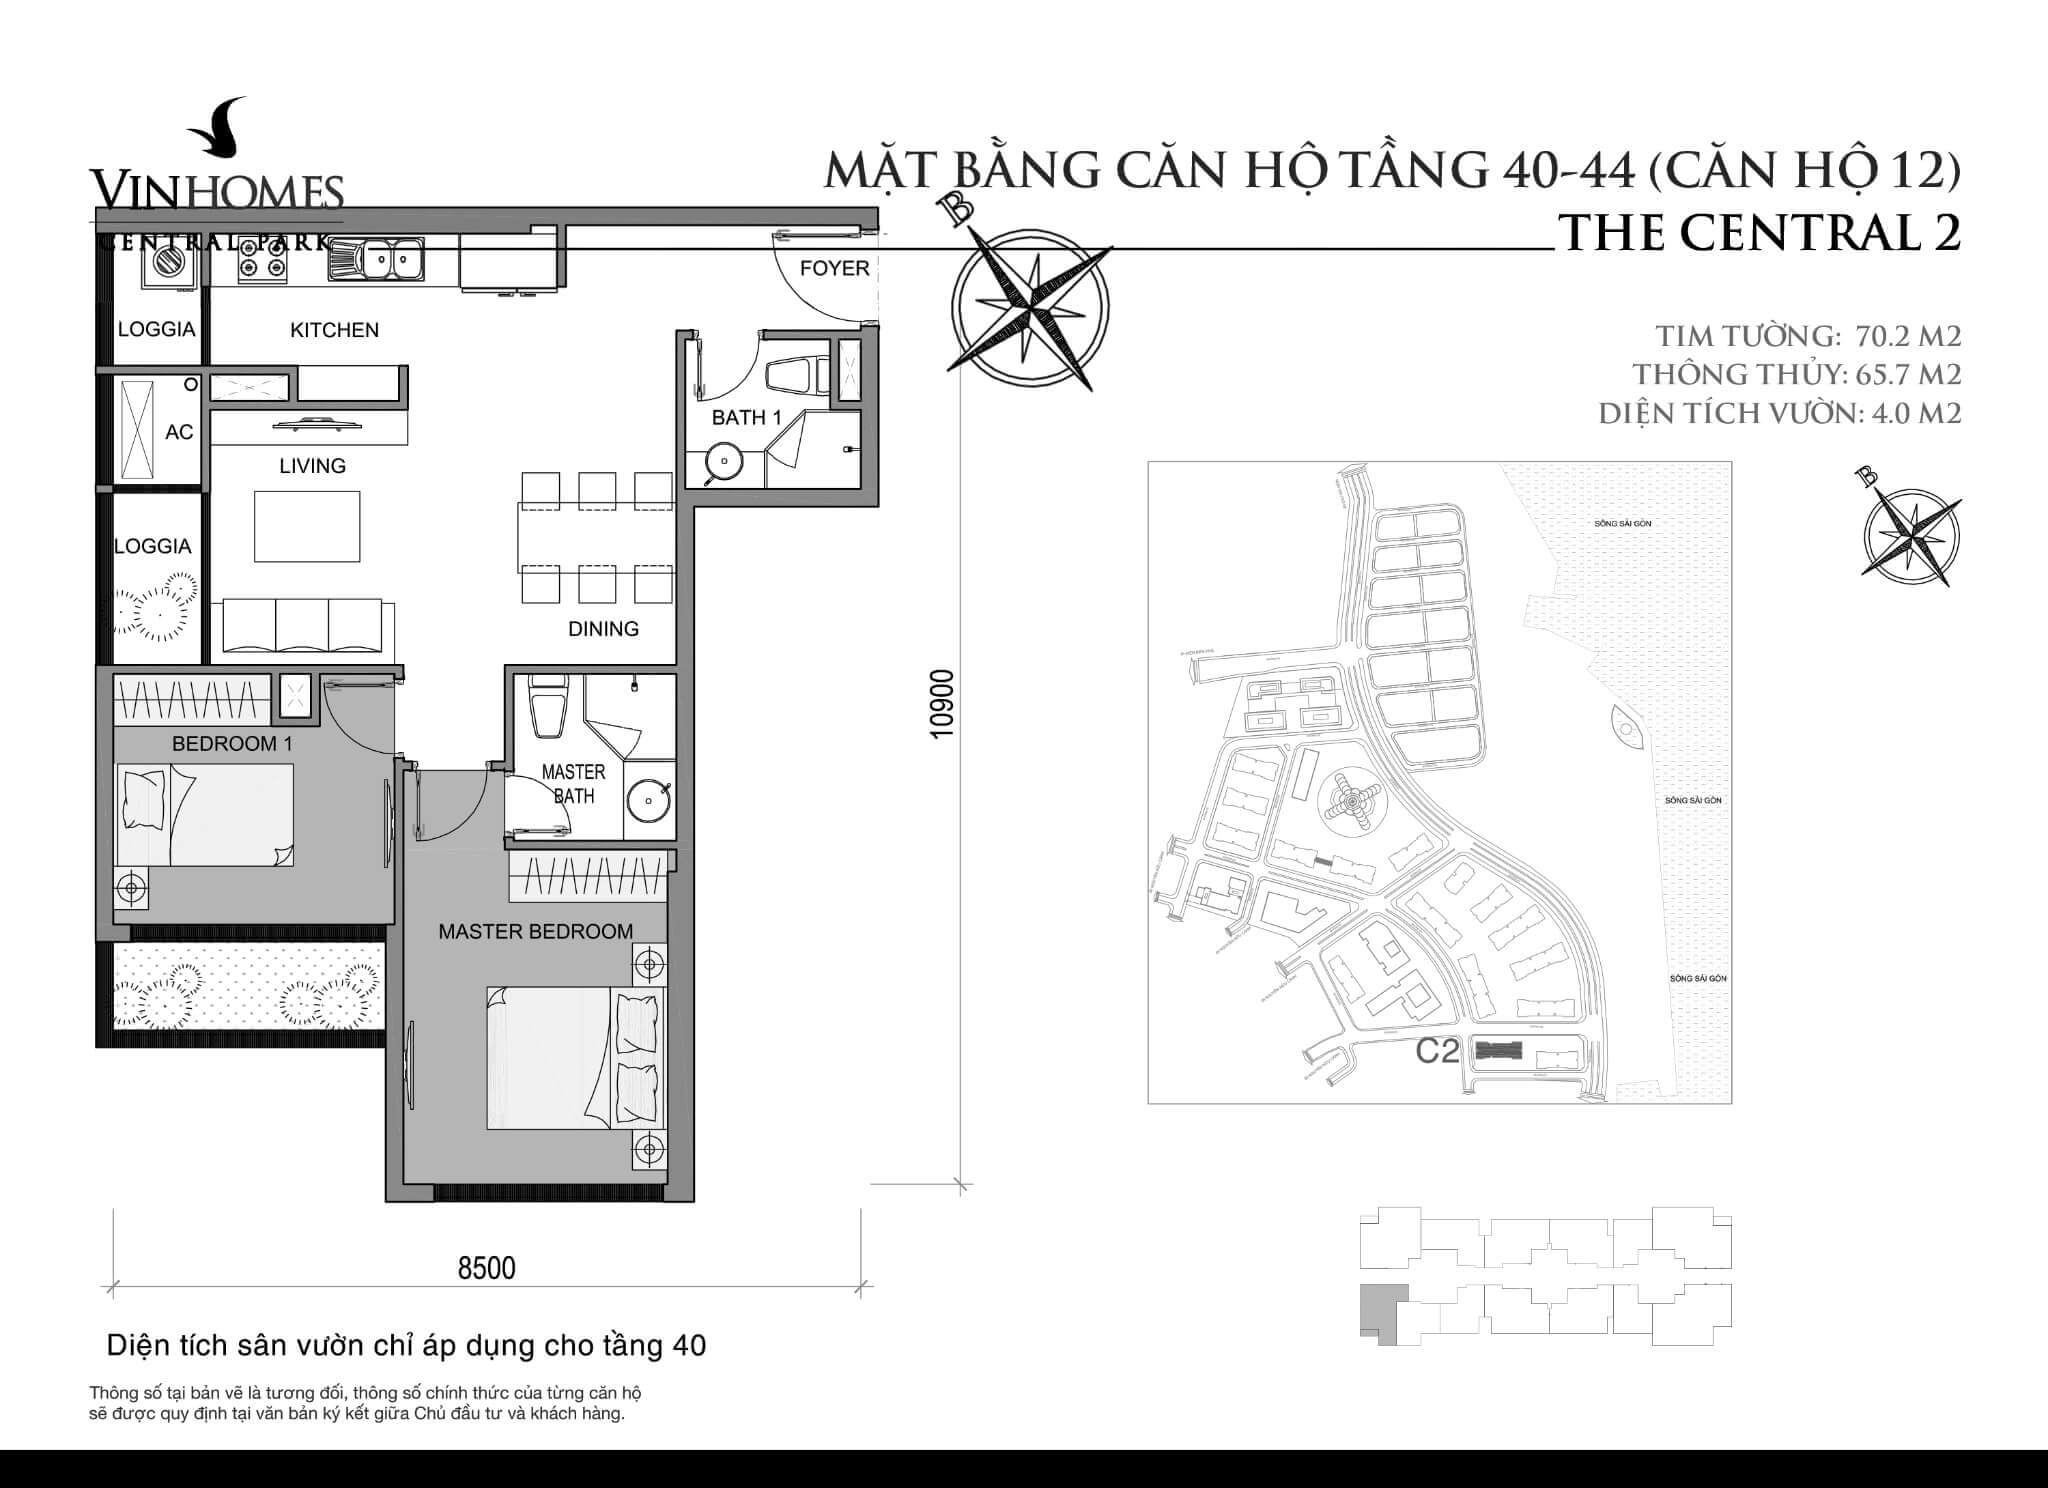 layout căn hộ số 12 tầng 40-44 Central 2